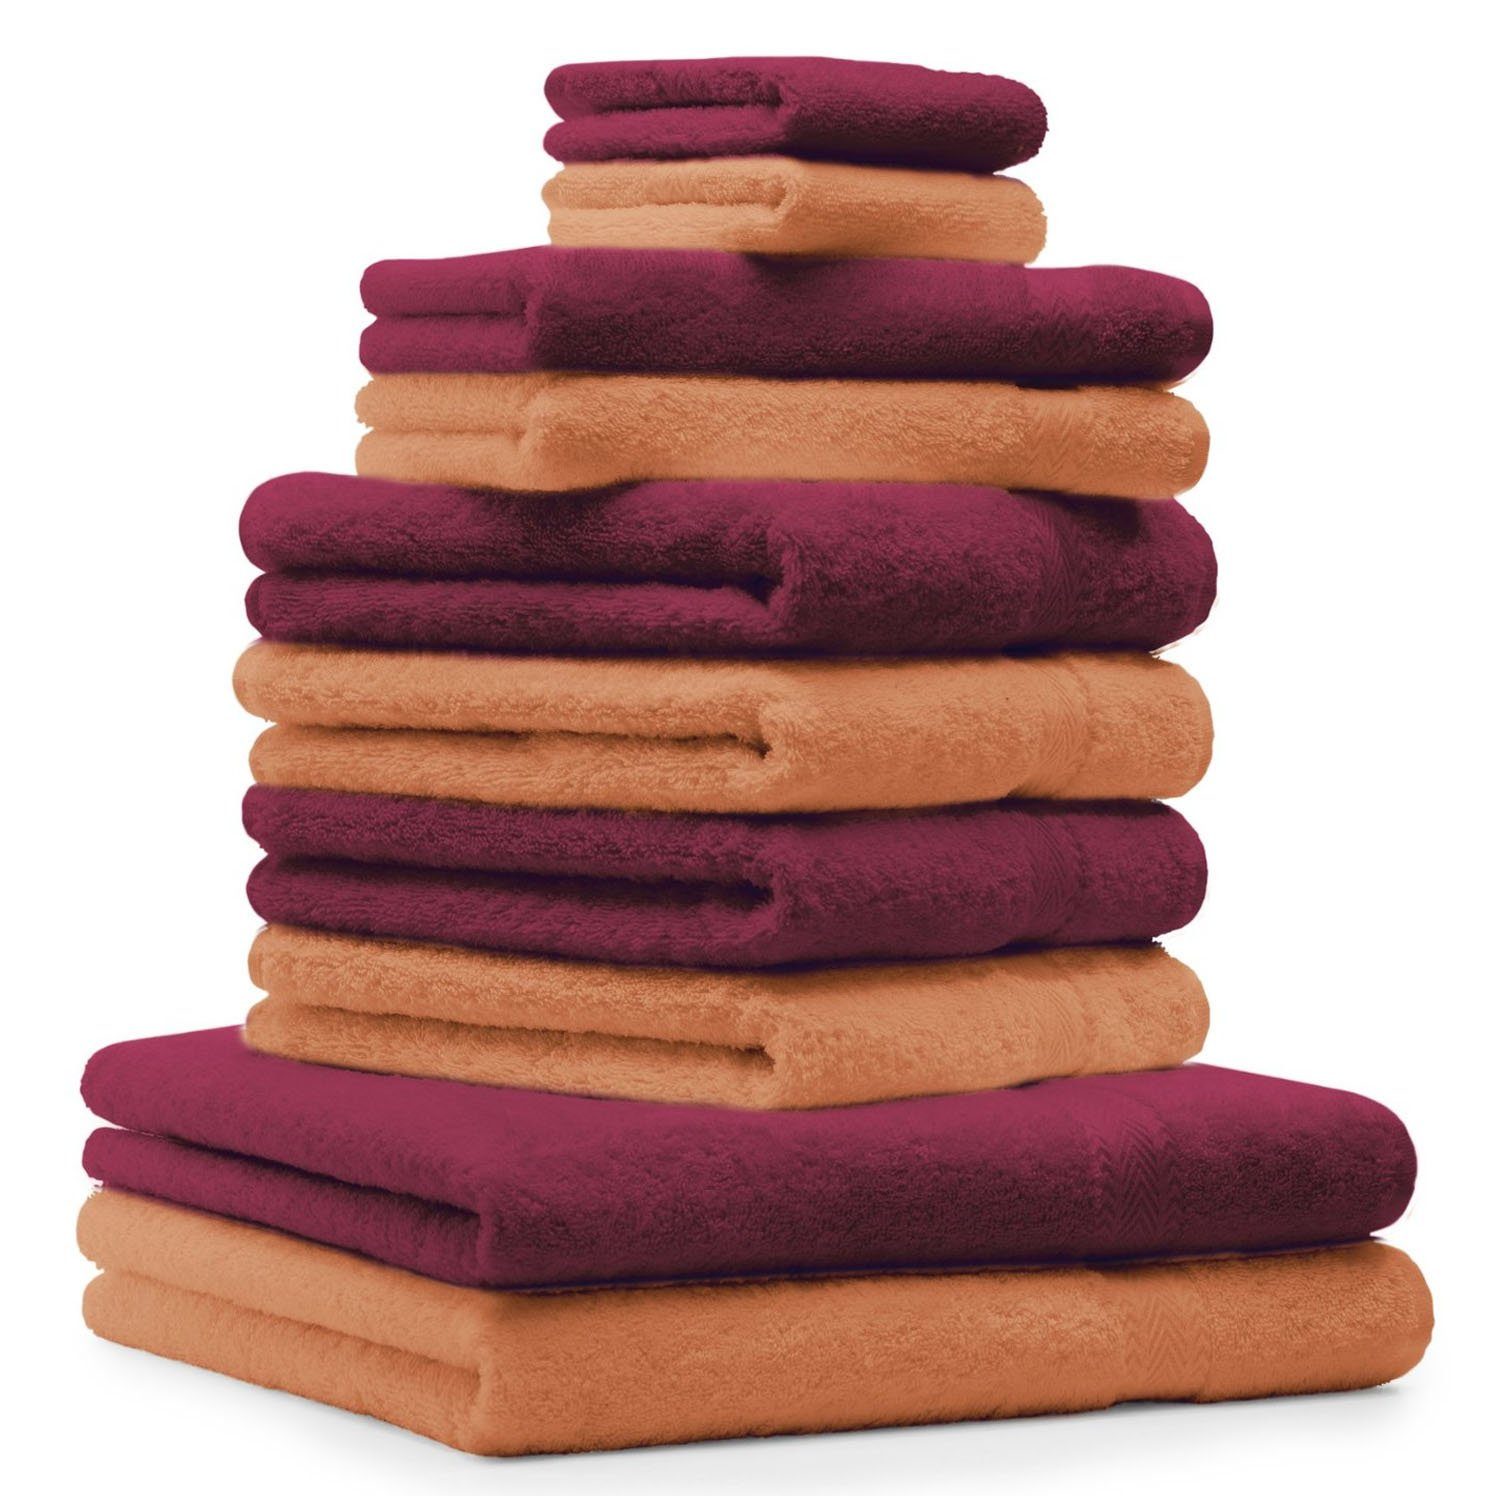 Betz Handtuch Set 10-TLG. Handtuch-Set Classic Farbe orange und dunkelrot, 100% Baumwolle